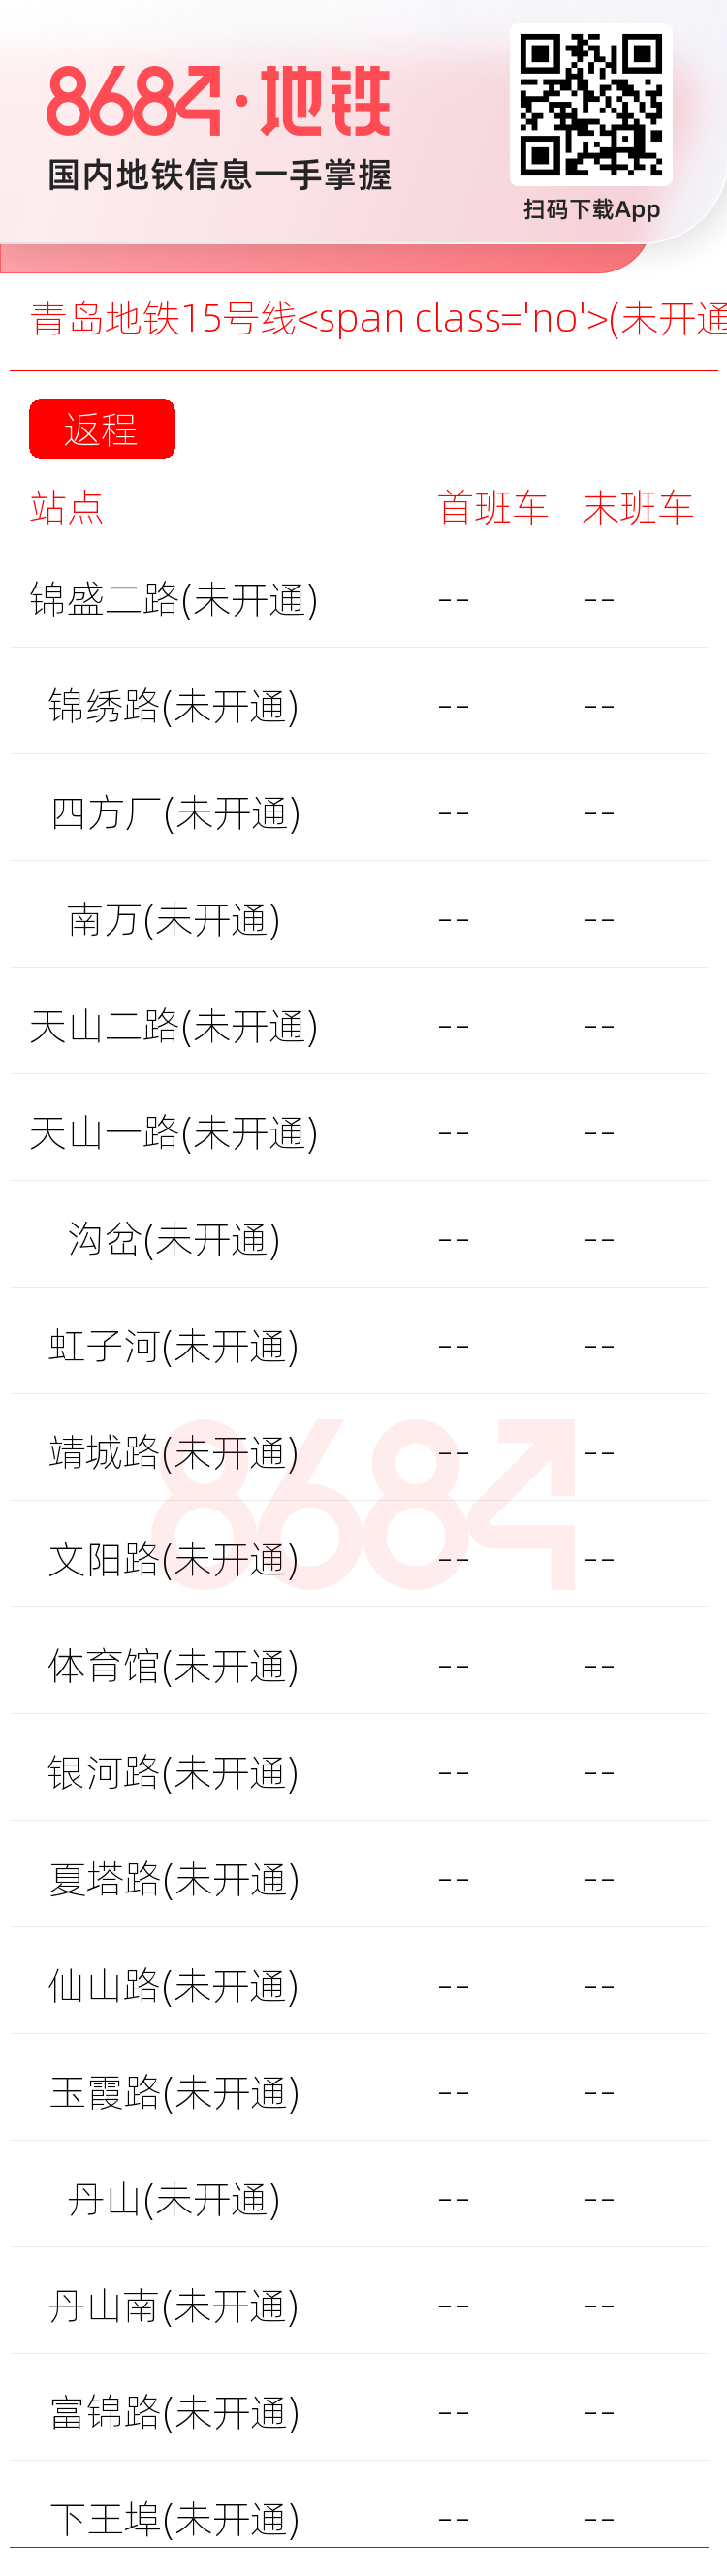 青岛地铁15号线<span class='no'>(未开通)</span>运营时间表